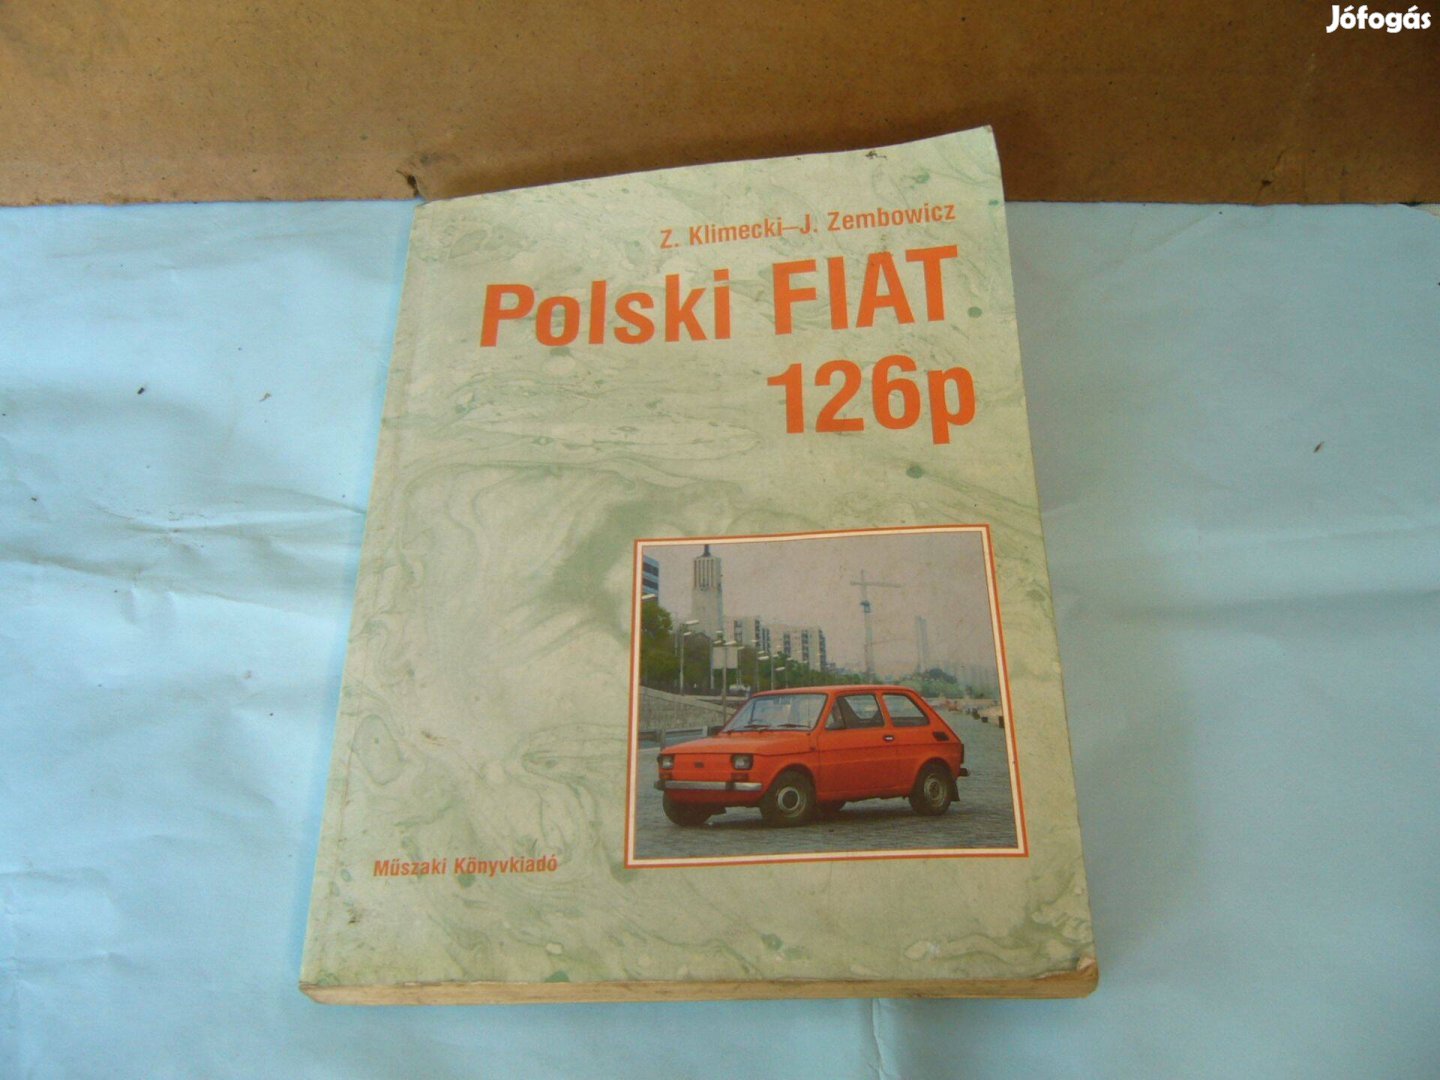 Polski Fiat 126 p javitási könyv